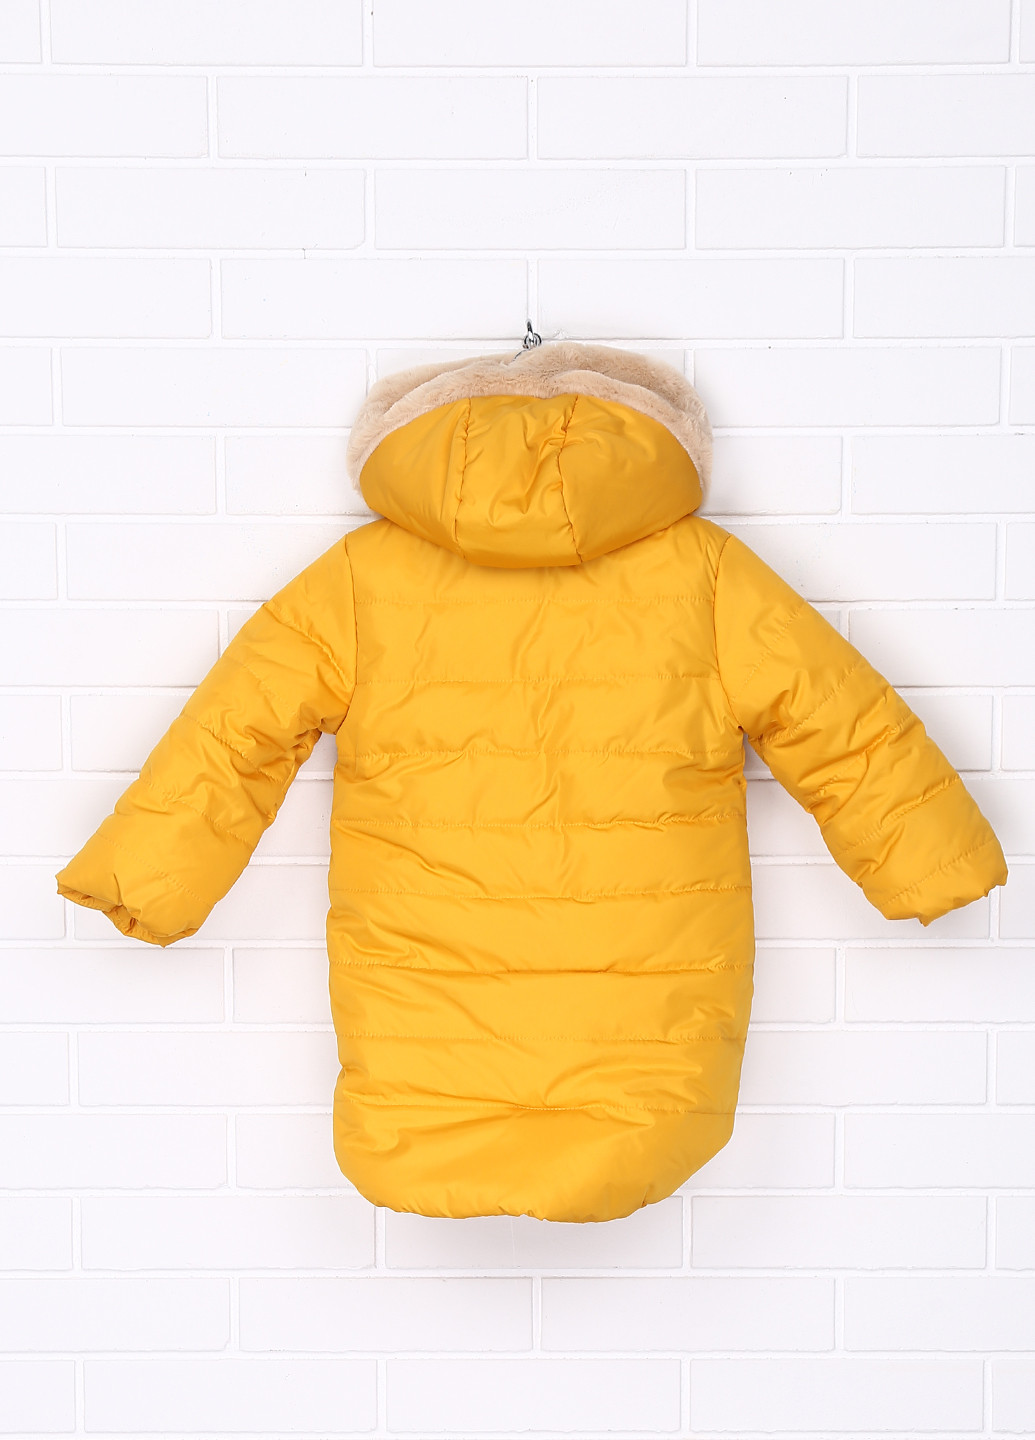 Салатовая зимняя куртка Одягайко